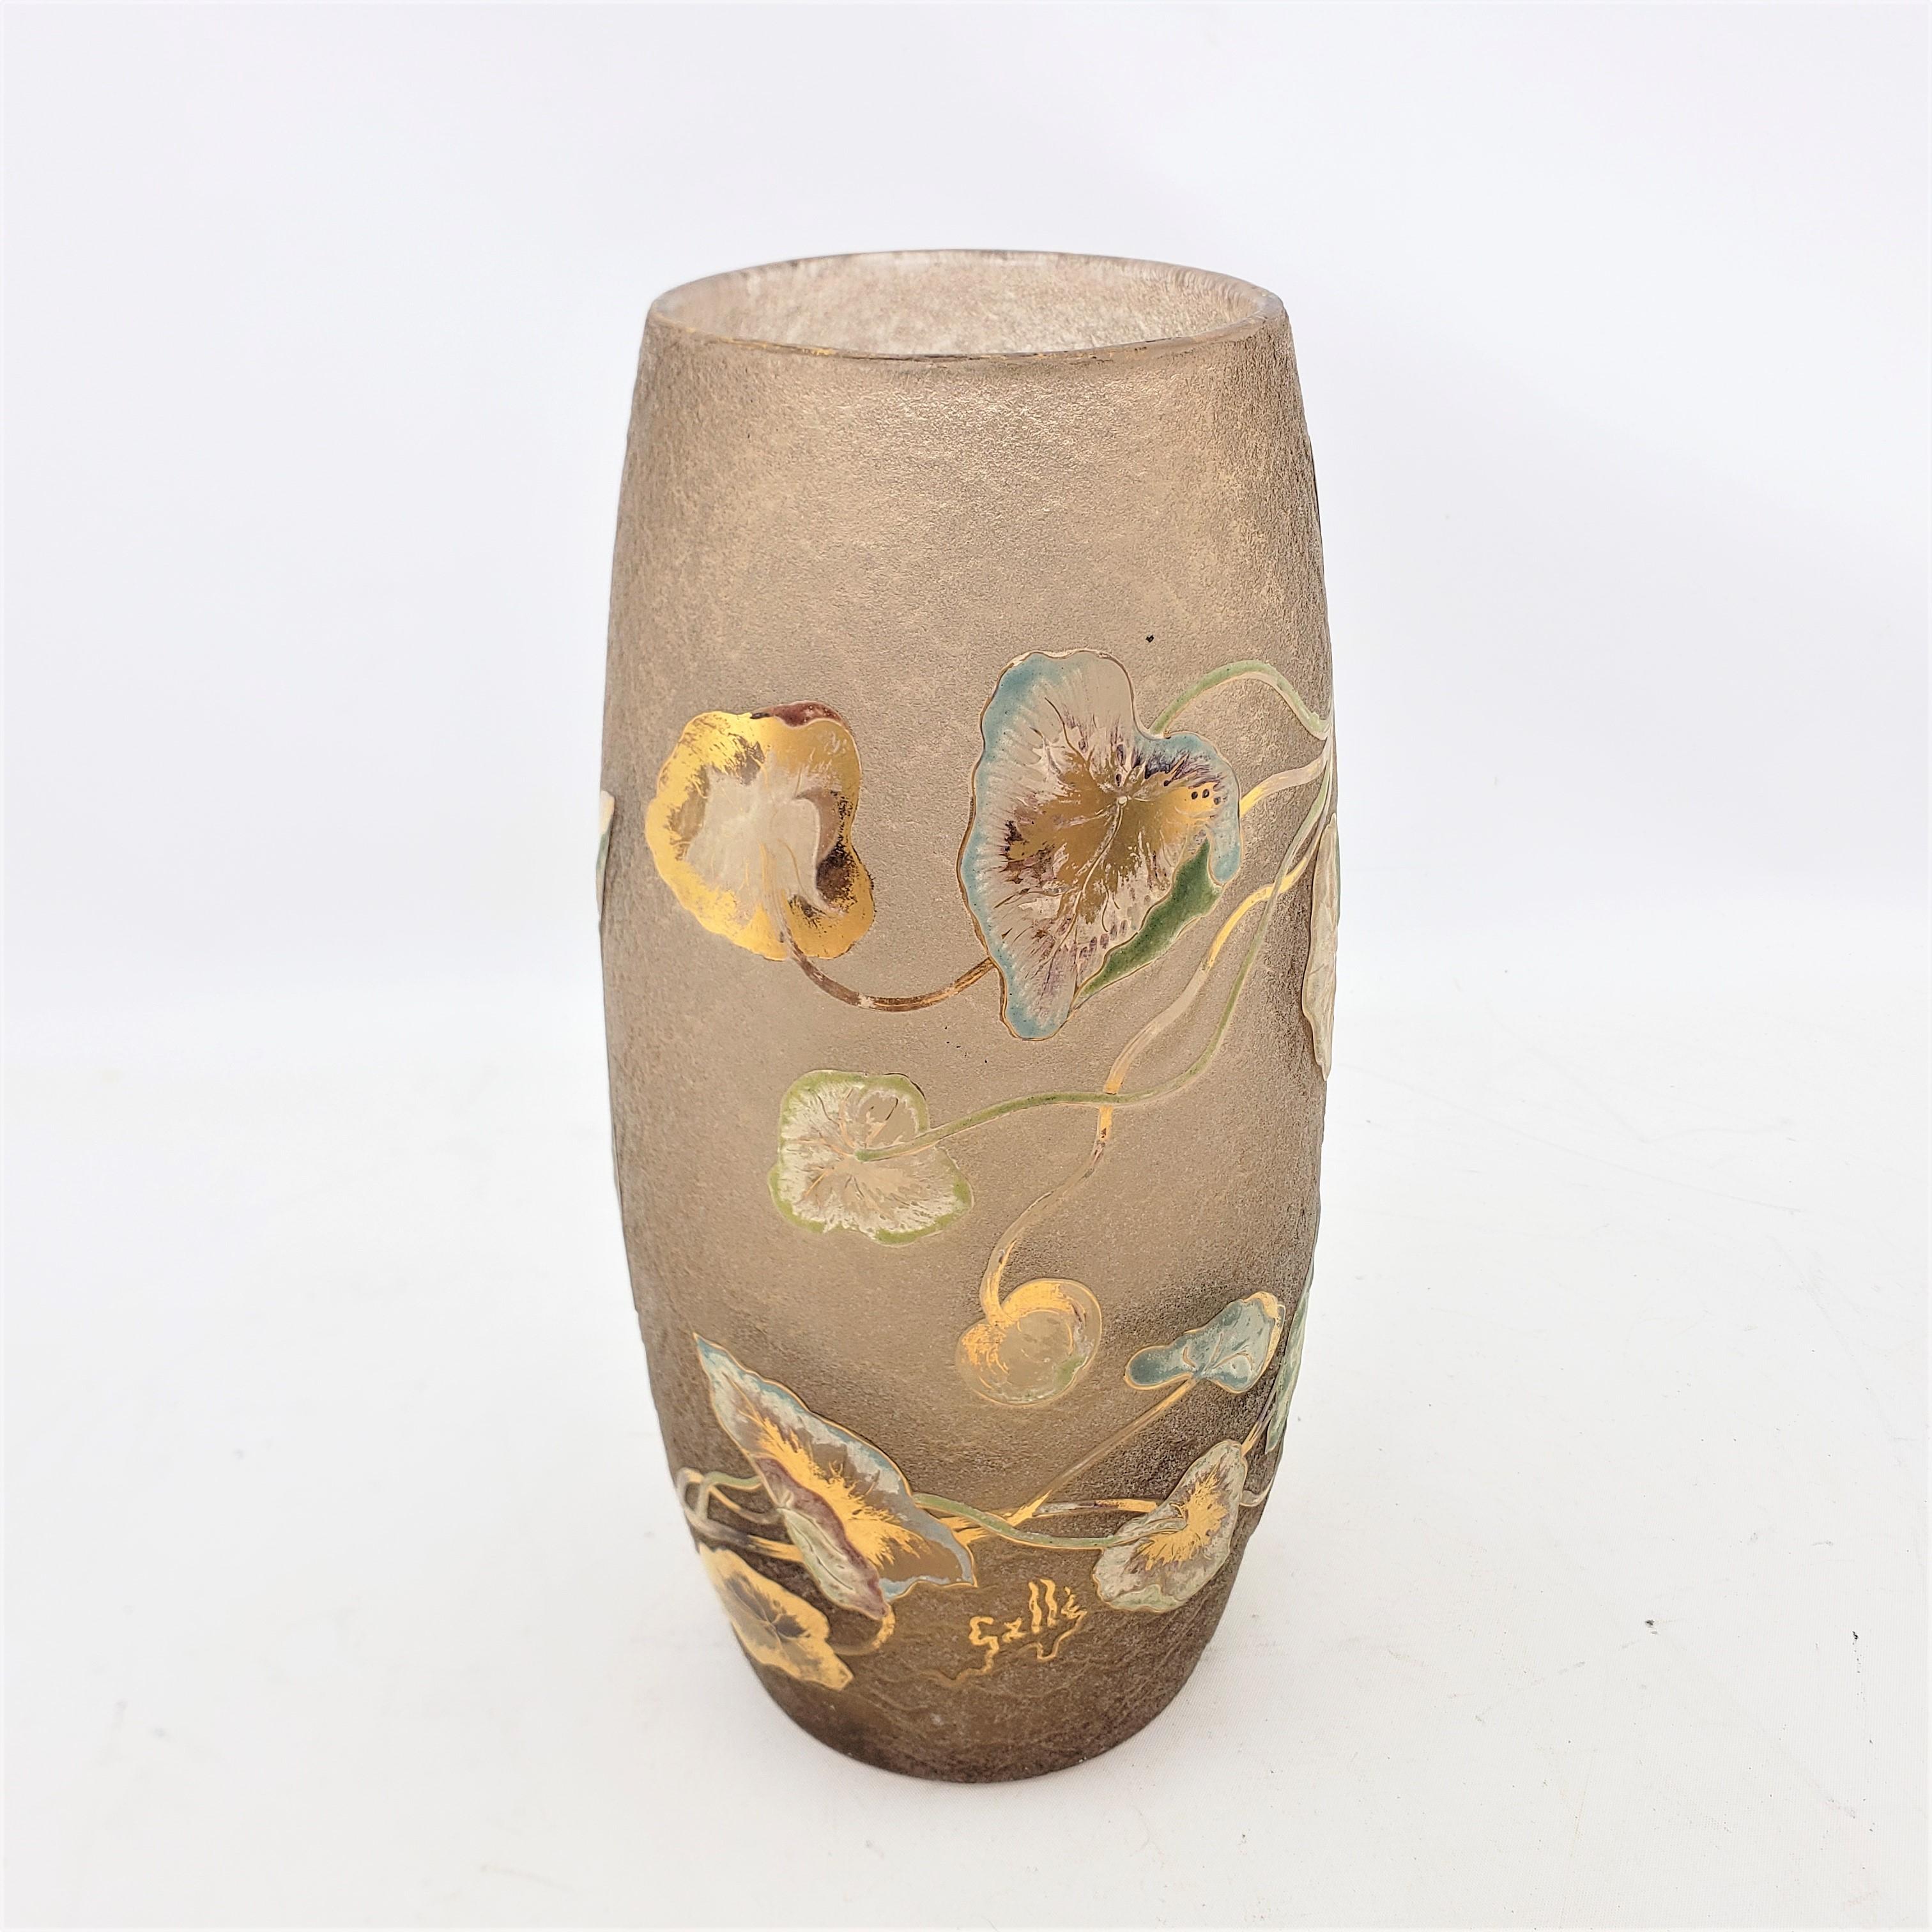 Hand-Crafted Emile Galle Signed Antique Acid Etched Vase with Gilt & Enamel Floral Decoration